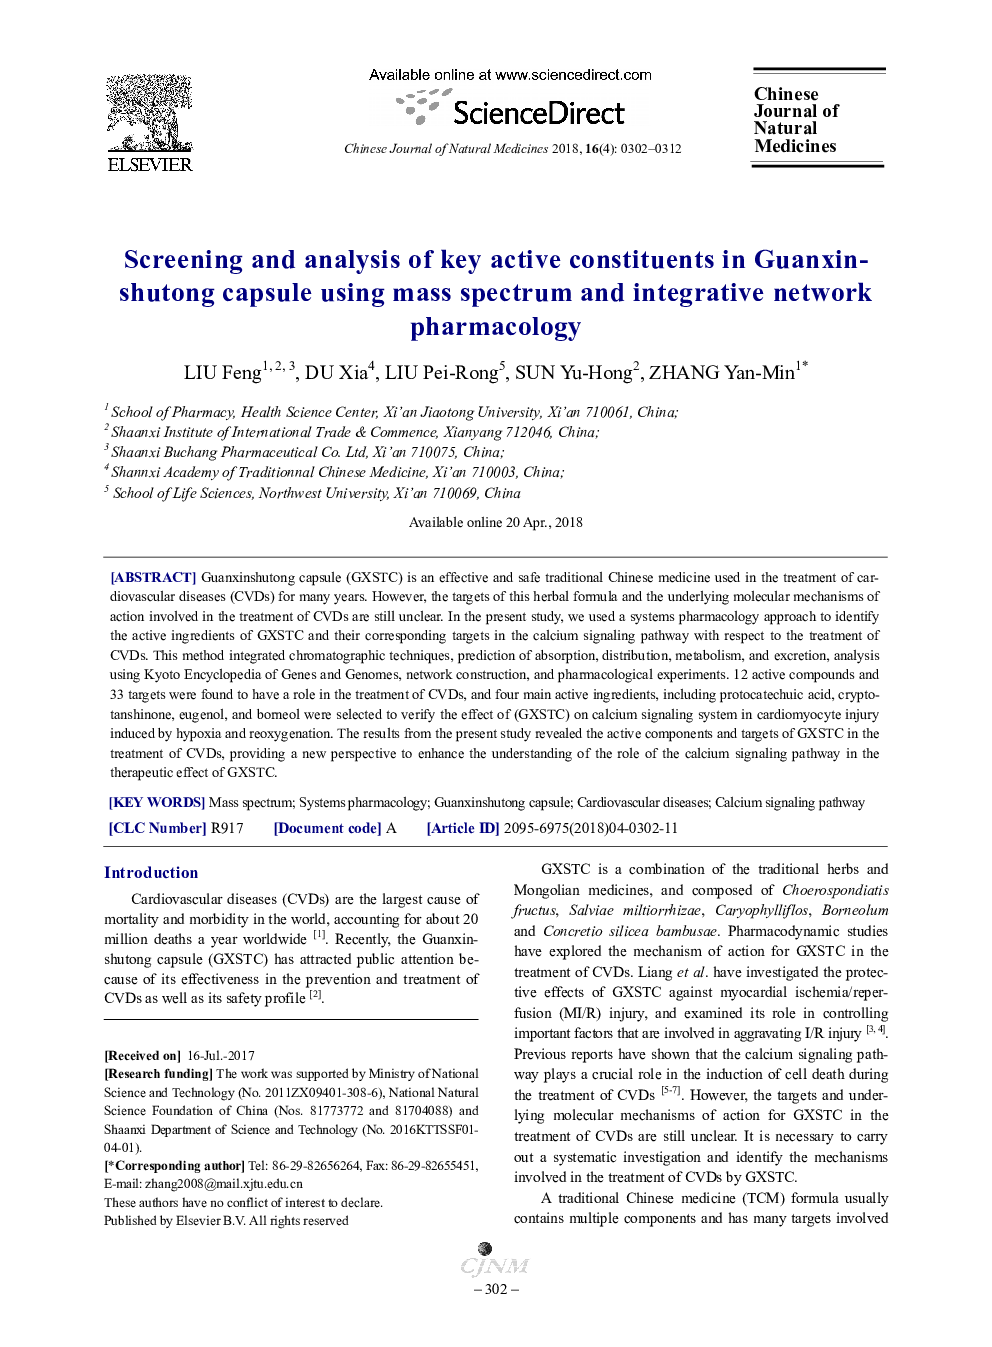 غربالگری و تجزیه و تحلیل اجزای فعال کلیدی در کپسول گوانکسین هاوتونگ با استفاده از طیف جرمی و شبکه دارویی شبکه تلفیقی 